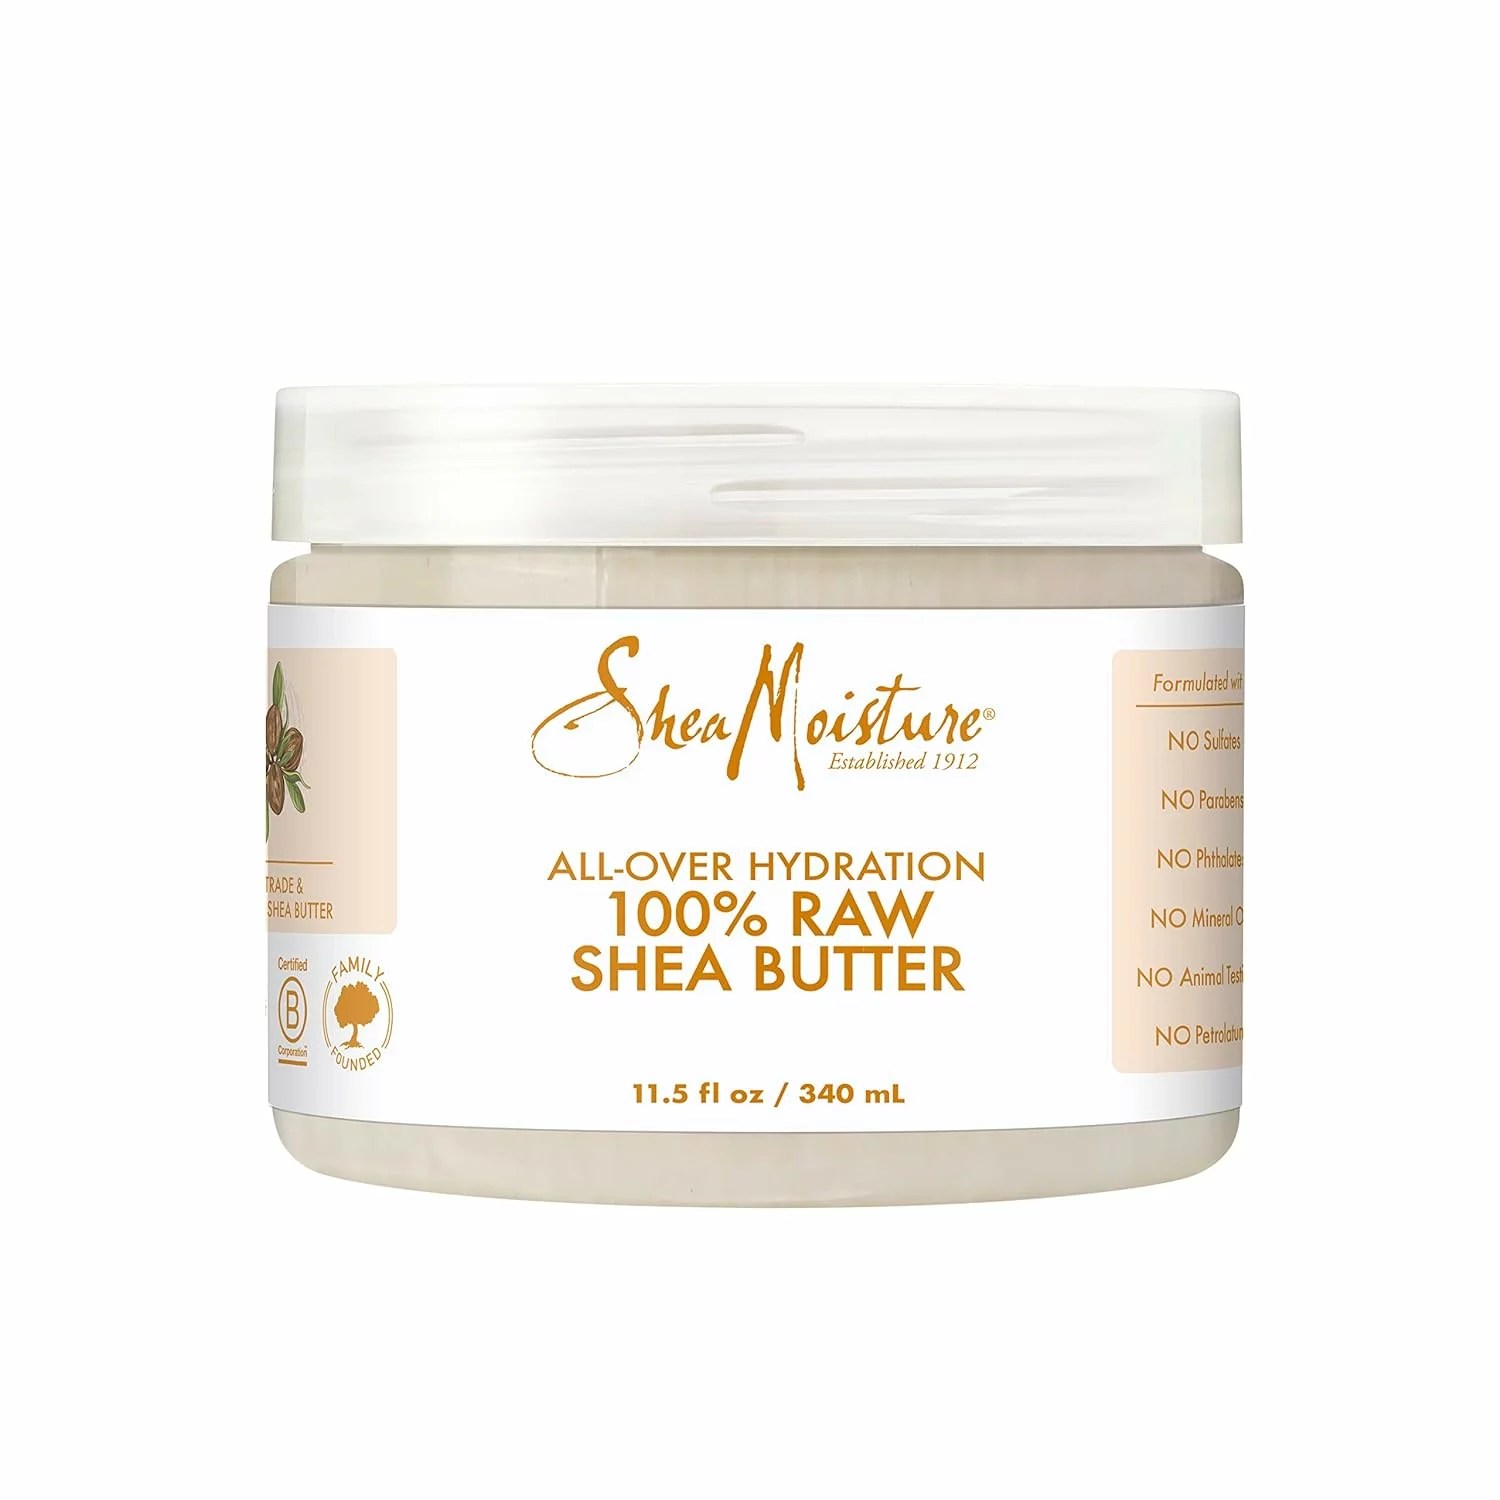 Shea Moisture 100% Raw Shea Butter